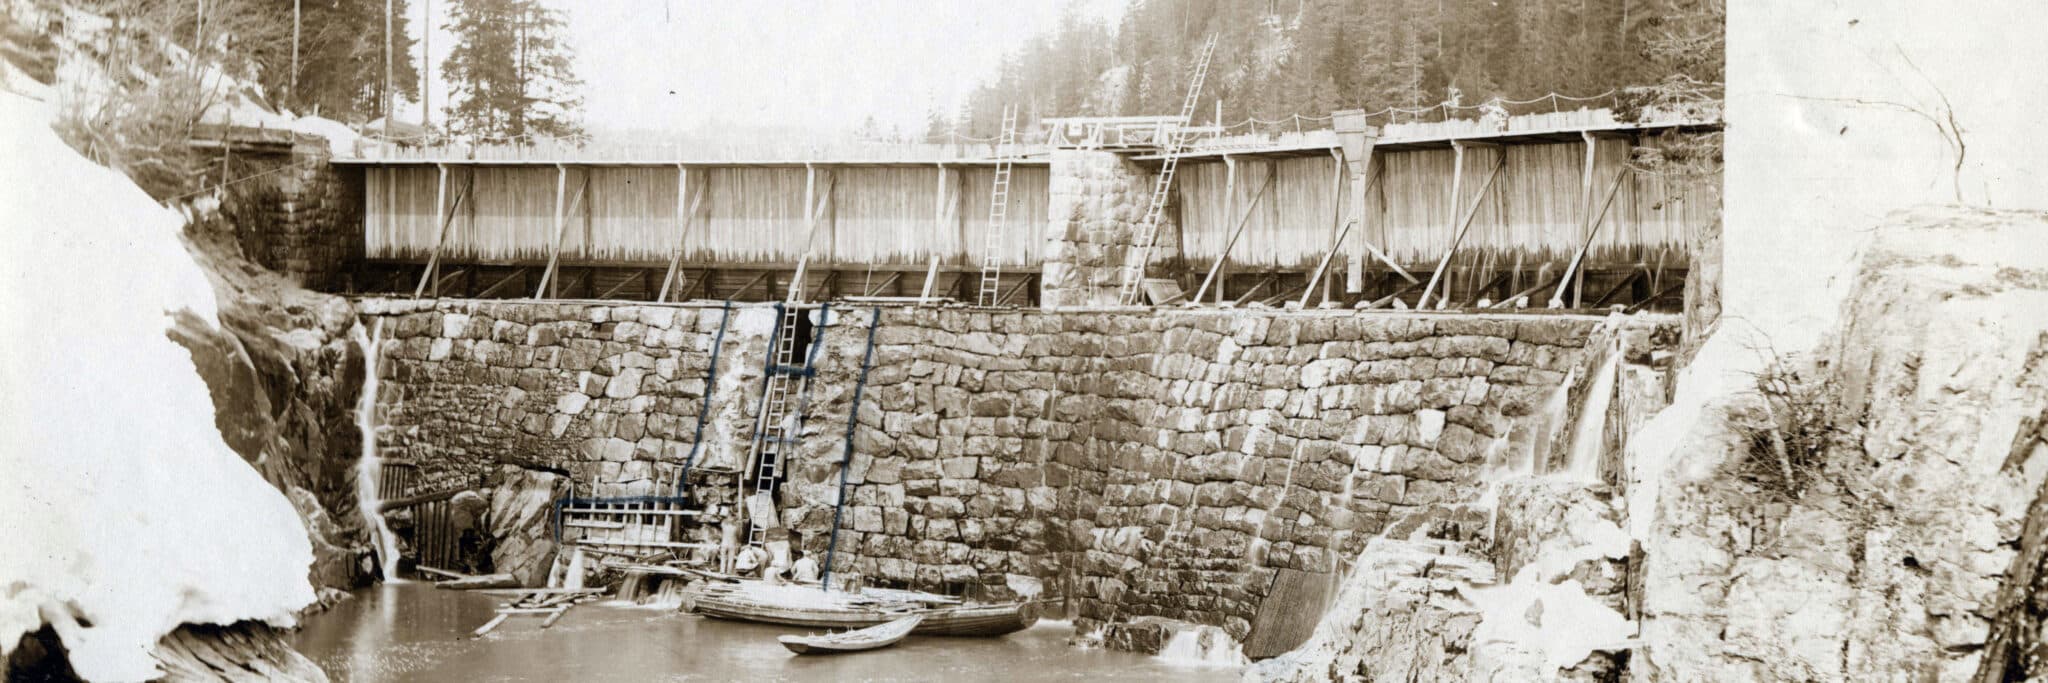 NÅLEDAM. Den gamle nåledammen i Eidsborg sluser stod oppå en solid dam bygget av stein.